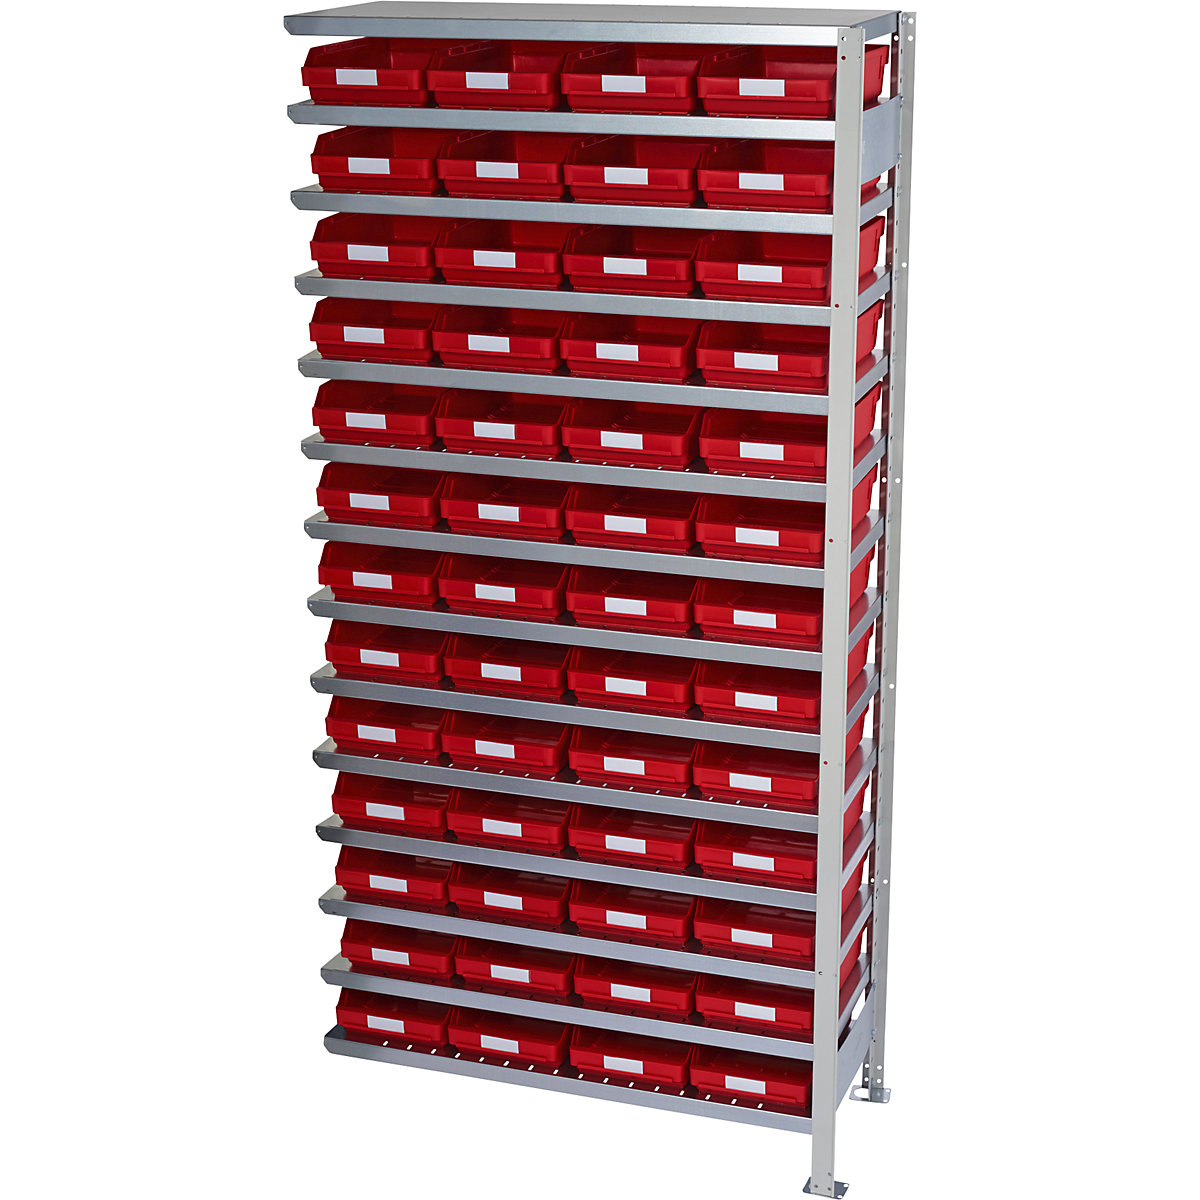 Összedugaszolós állvány dobozokkal – STEMO, állványmagasság 2100 mm, bővítő állvány, 300 mm mély, 52 piros doboz-21